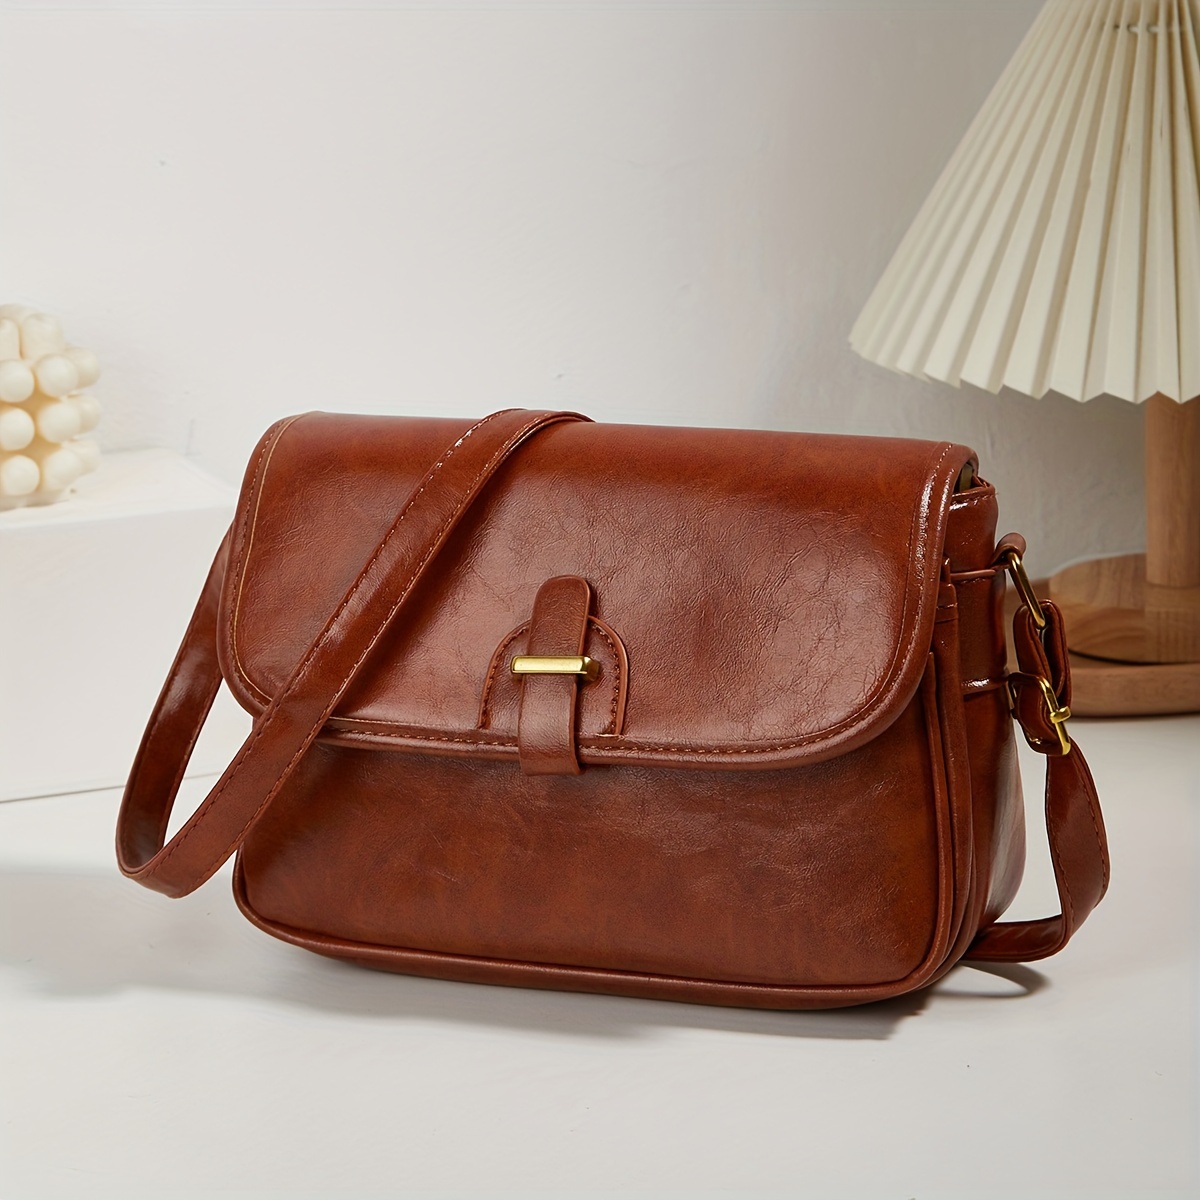 Vintage Design Crossbody Bag, Oil Wax Leather One Shoulder Bag